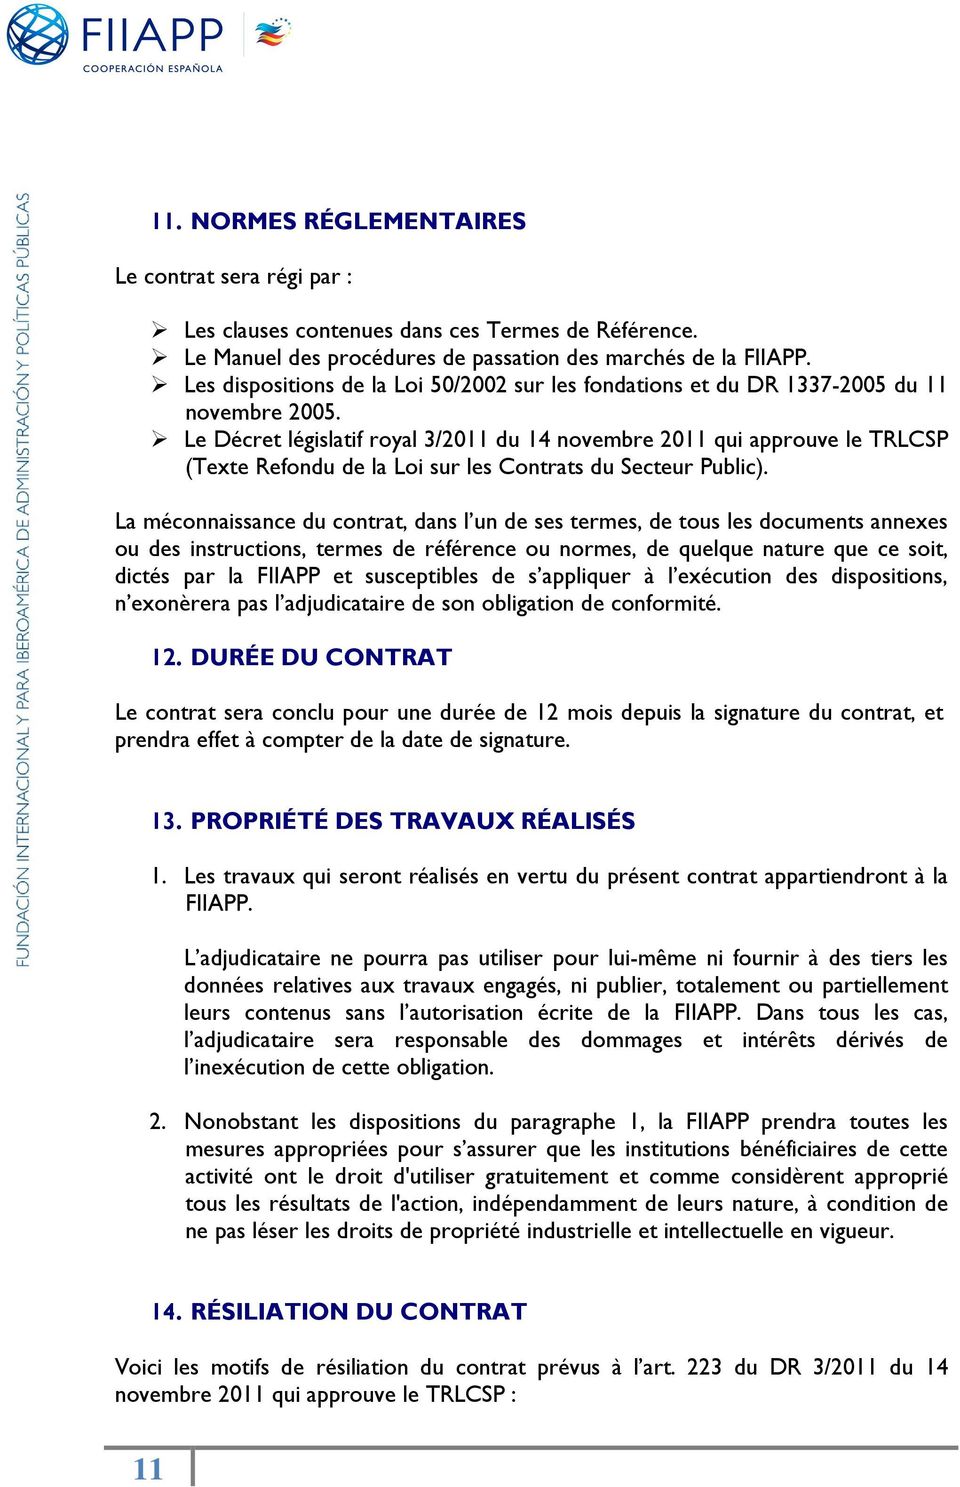 Le Décret législatif royal 3/2011 du 14 novembre 2011 qui approuve le TRLCSP (Texte Refondu de la Loi sur les Contrats du Secteur Public).